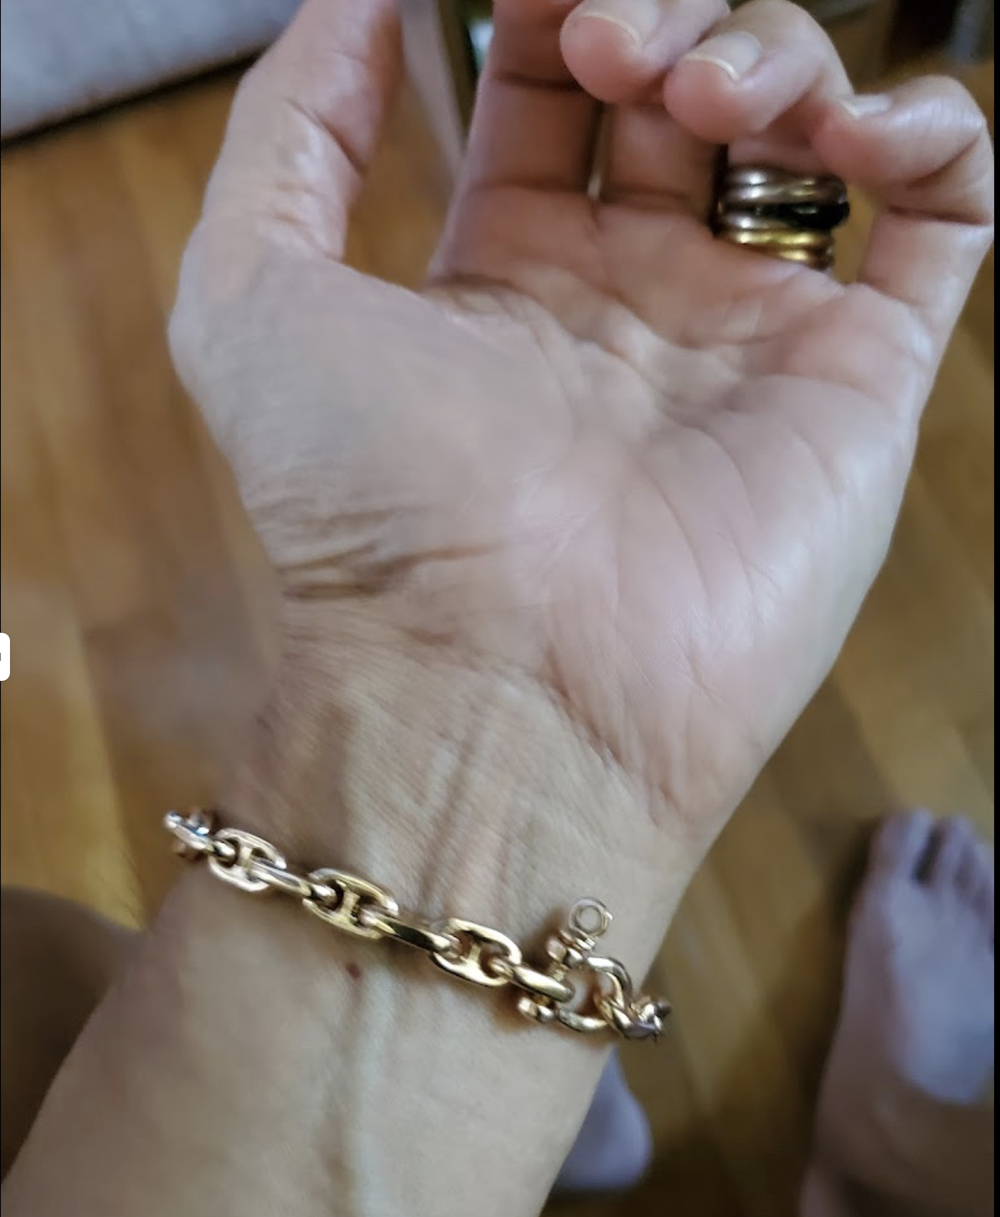 Aumaris Anchor Chain Bracelet